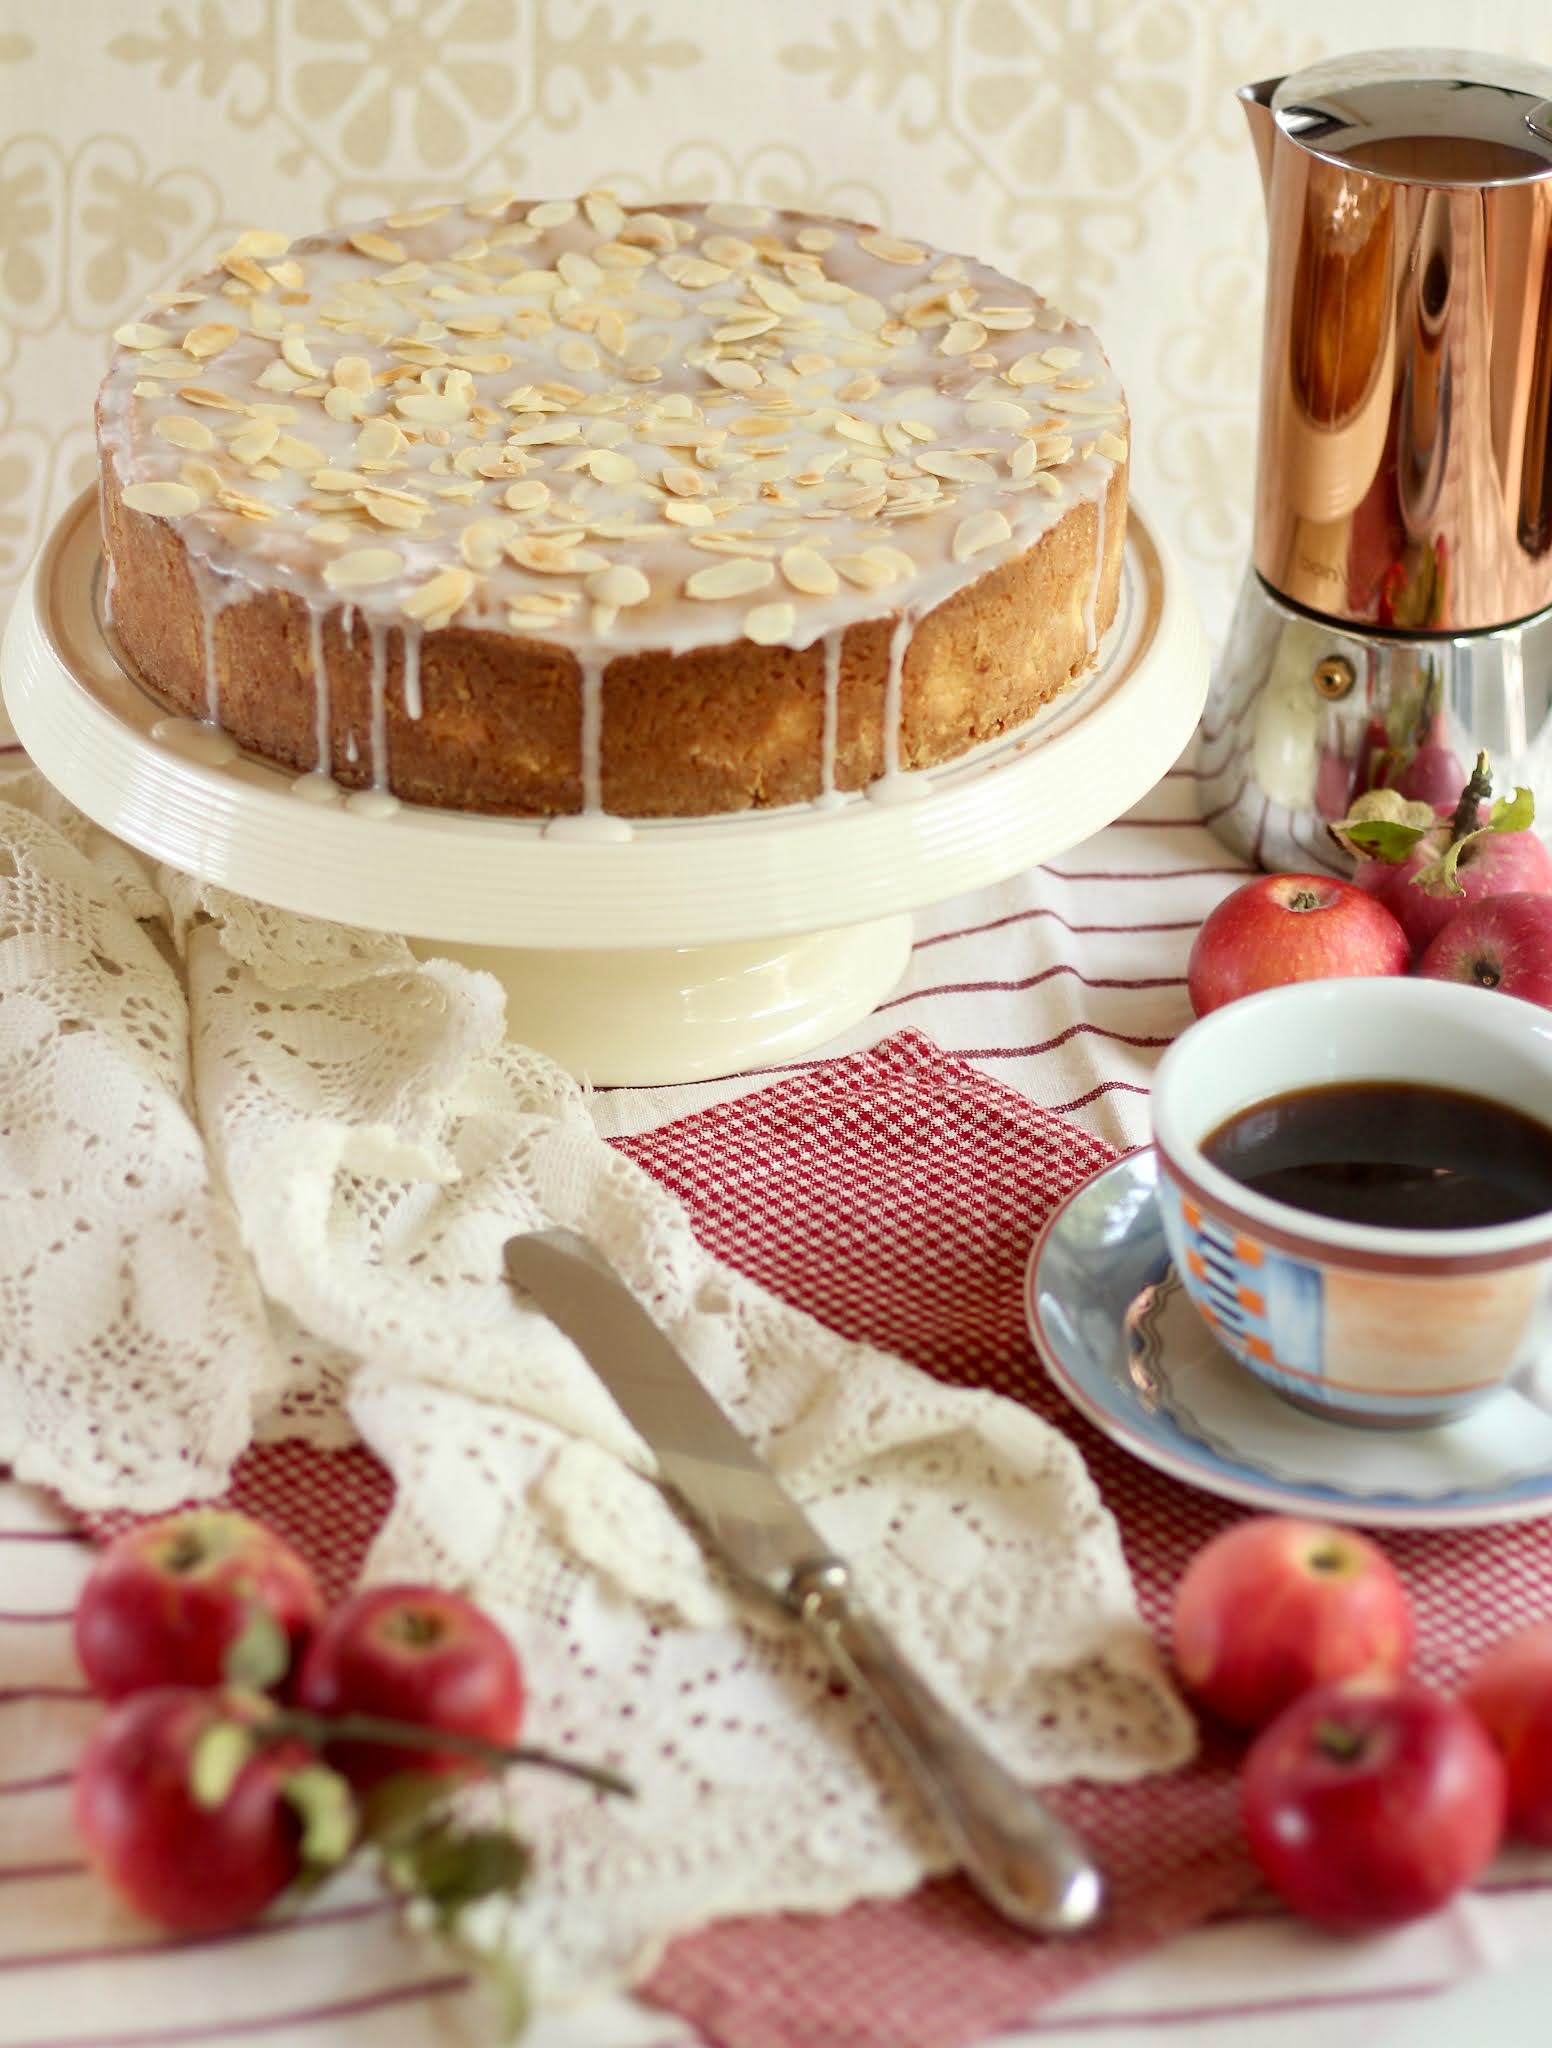 Der Kuchenklassiker: Gedeckter Apfelkuchen. Köstliche, herbstliche Apfeltorte! | Rezept und Video